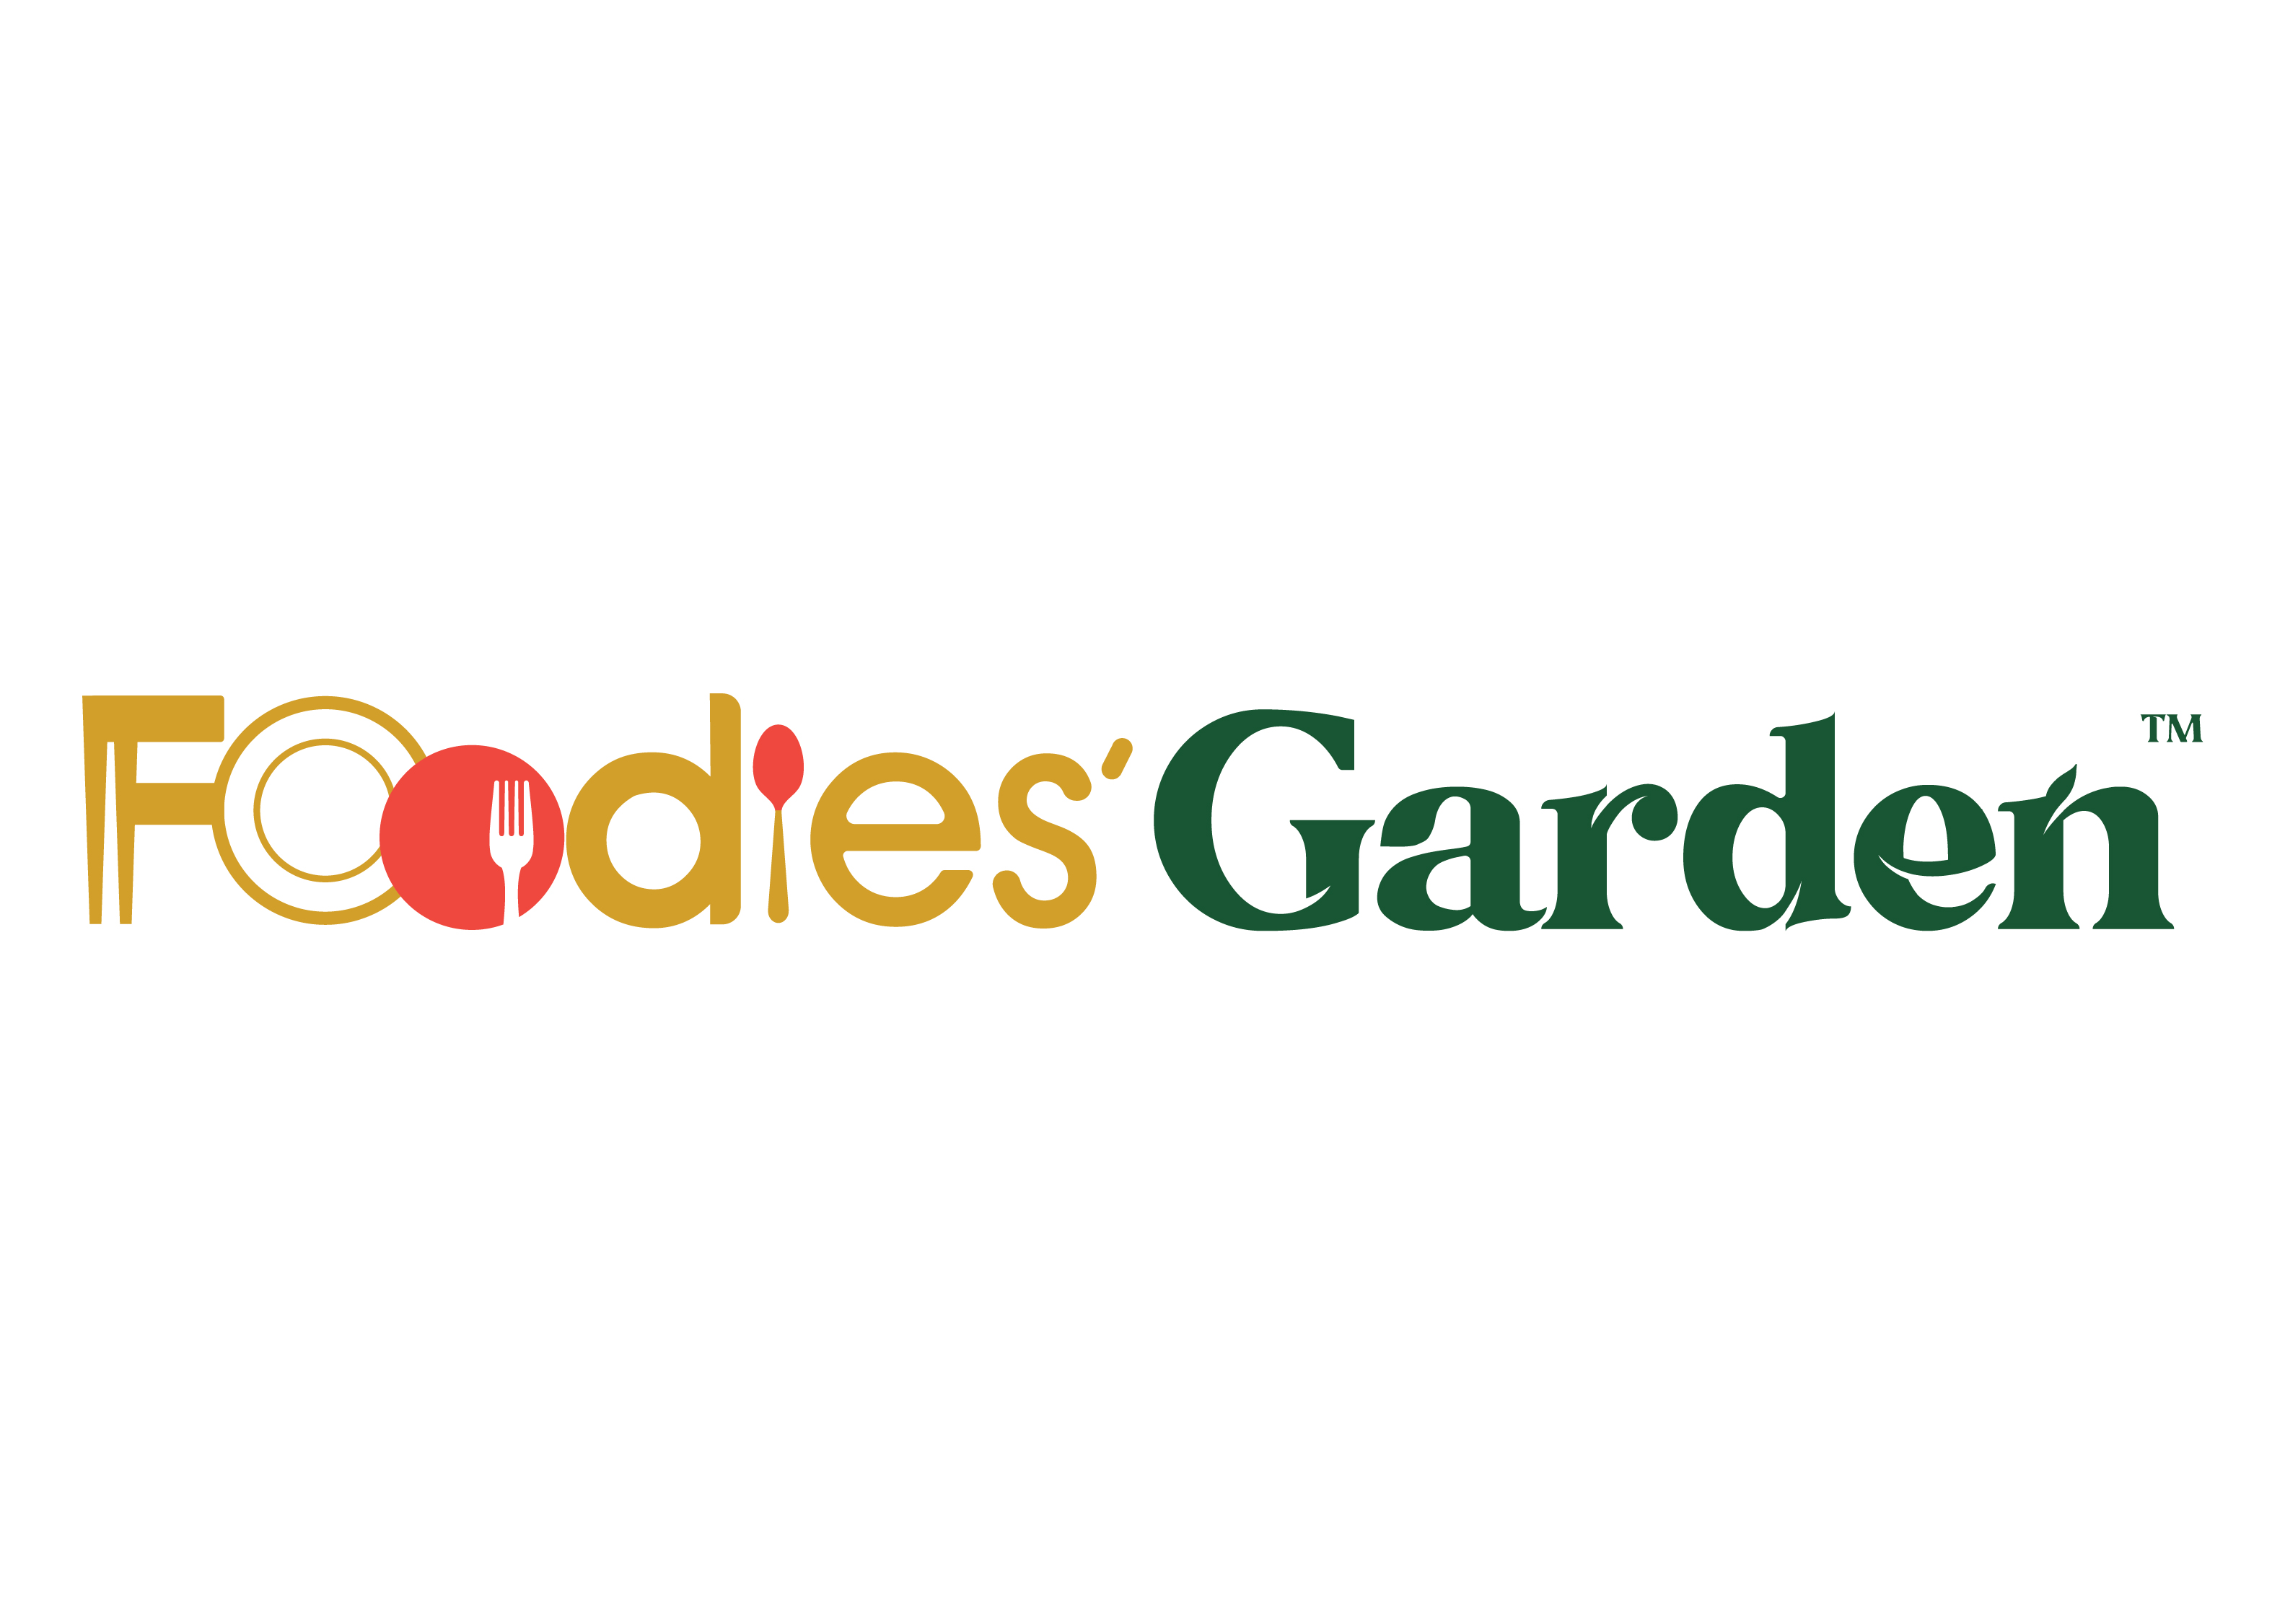 Foodies’ Garden